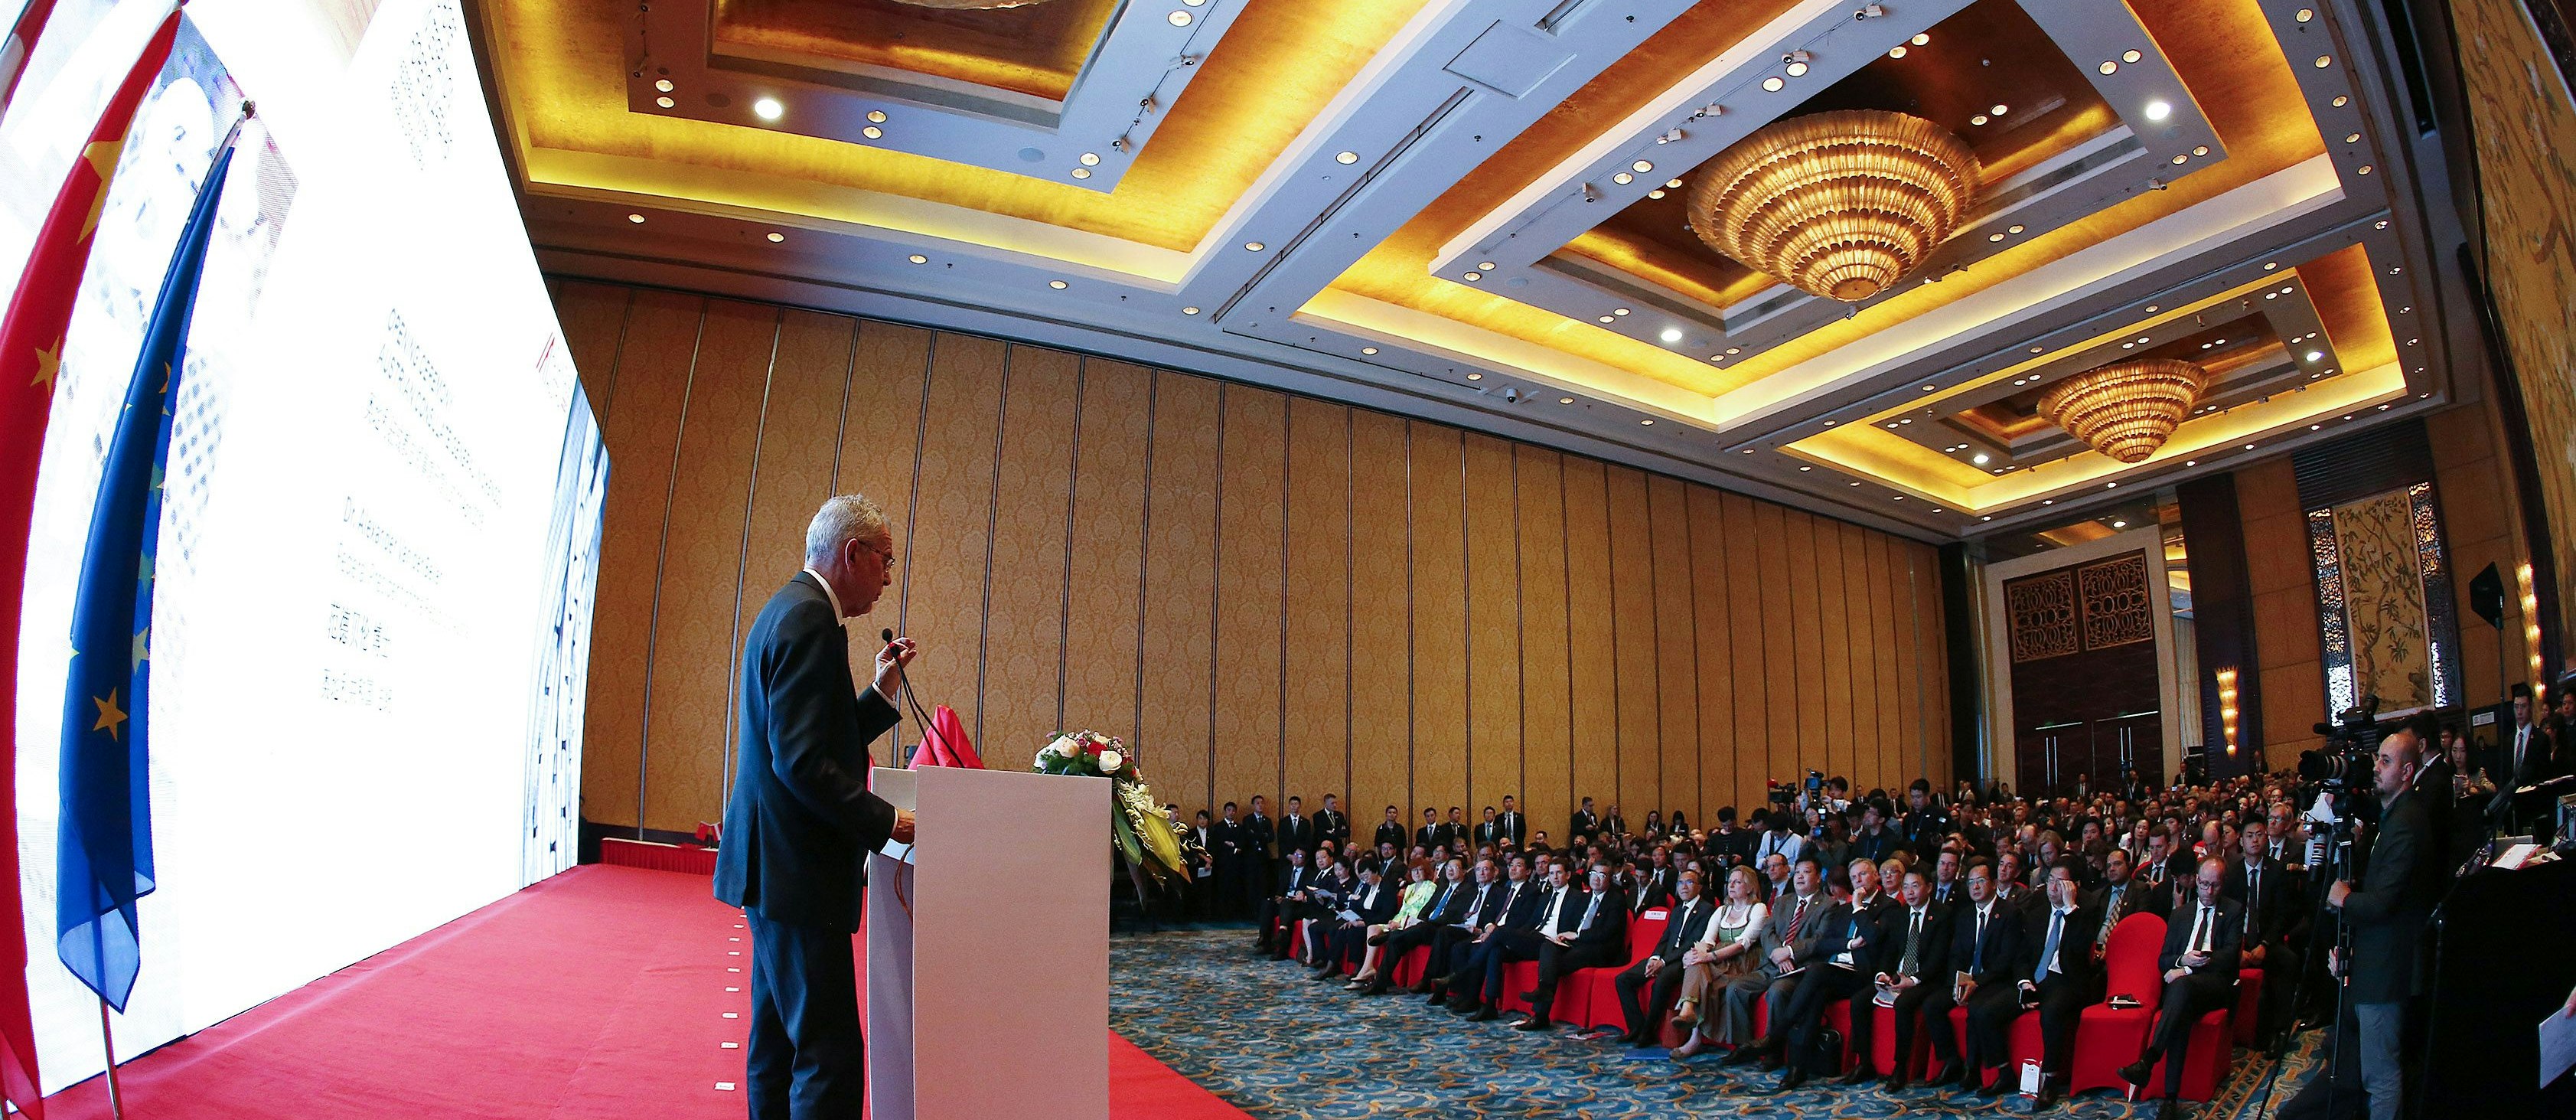 Bundespräsident Alexander Van der Bellen anlässlich der Eröffnung des Österreich-Sichuan-Wirtschaftsforums 2018 in Chengdu